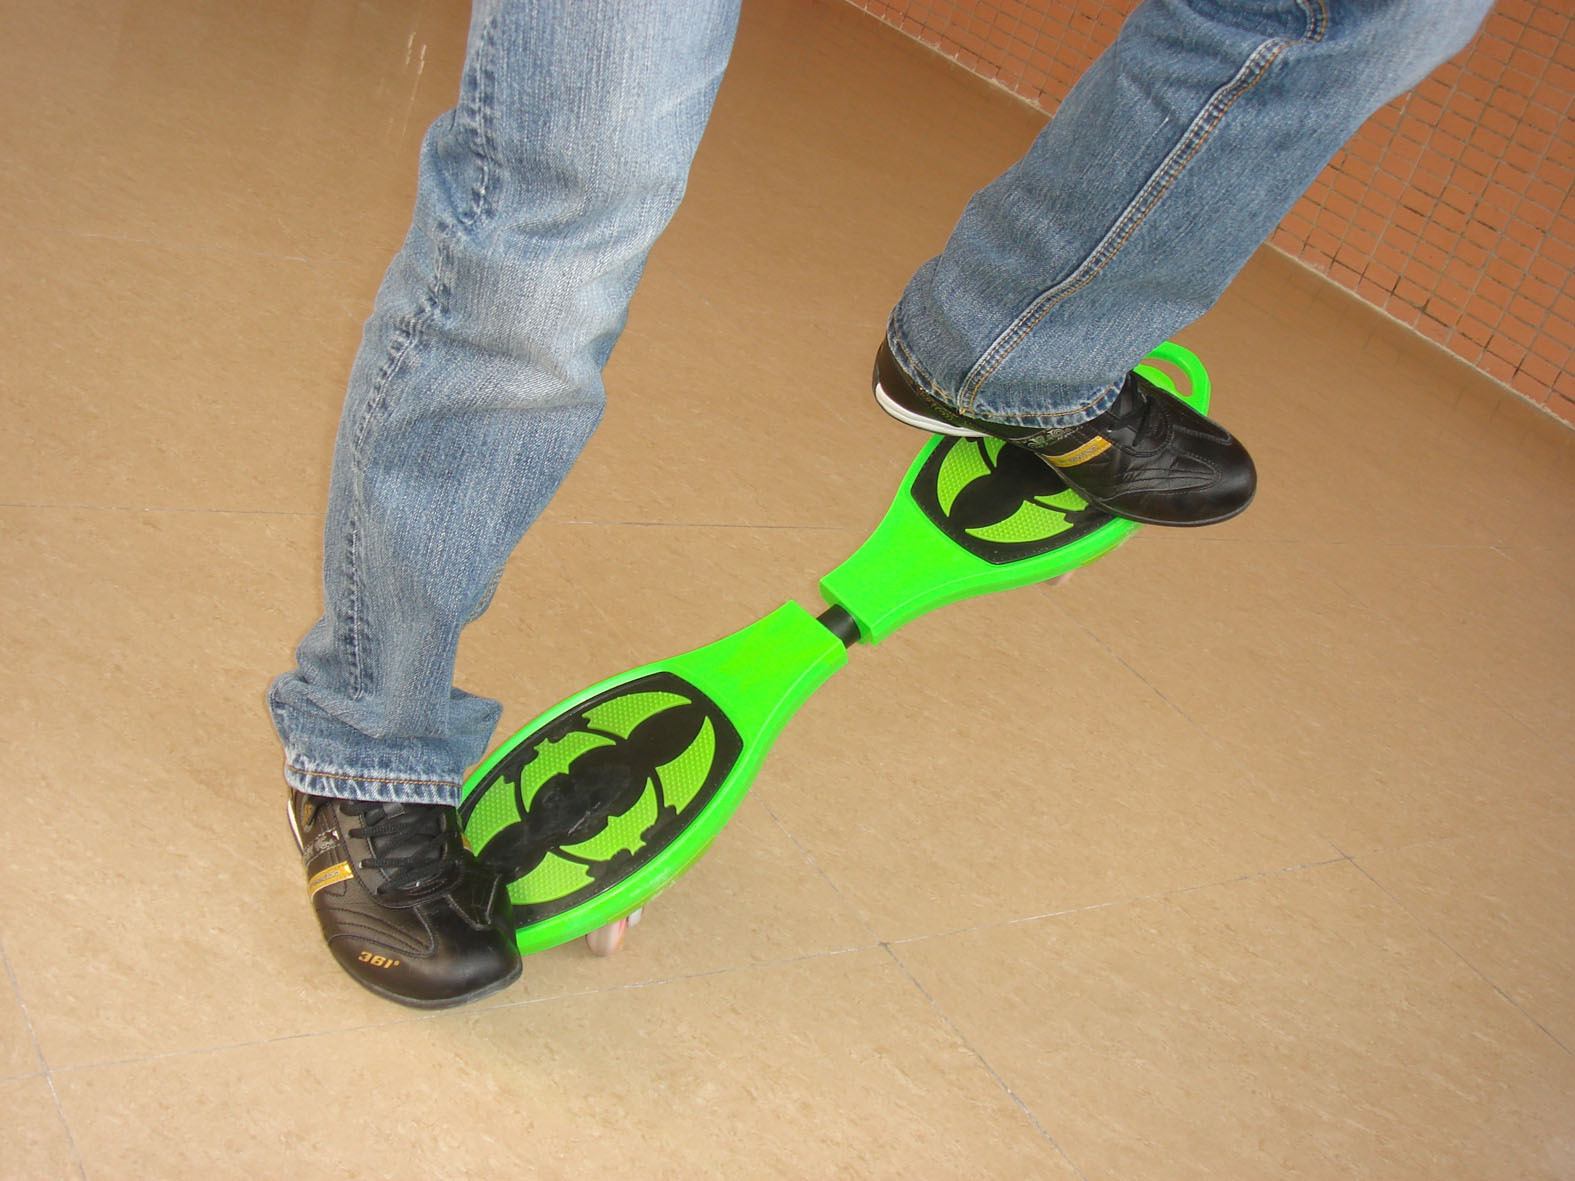 新款活力板滑板二轮漂移板abs料运动滑板车火箭板ph808-5批发图片_7